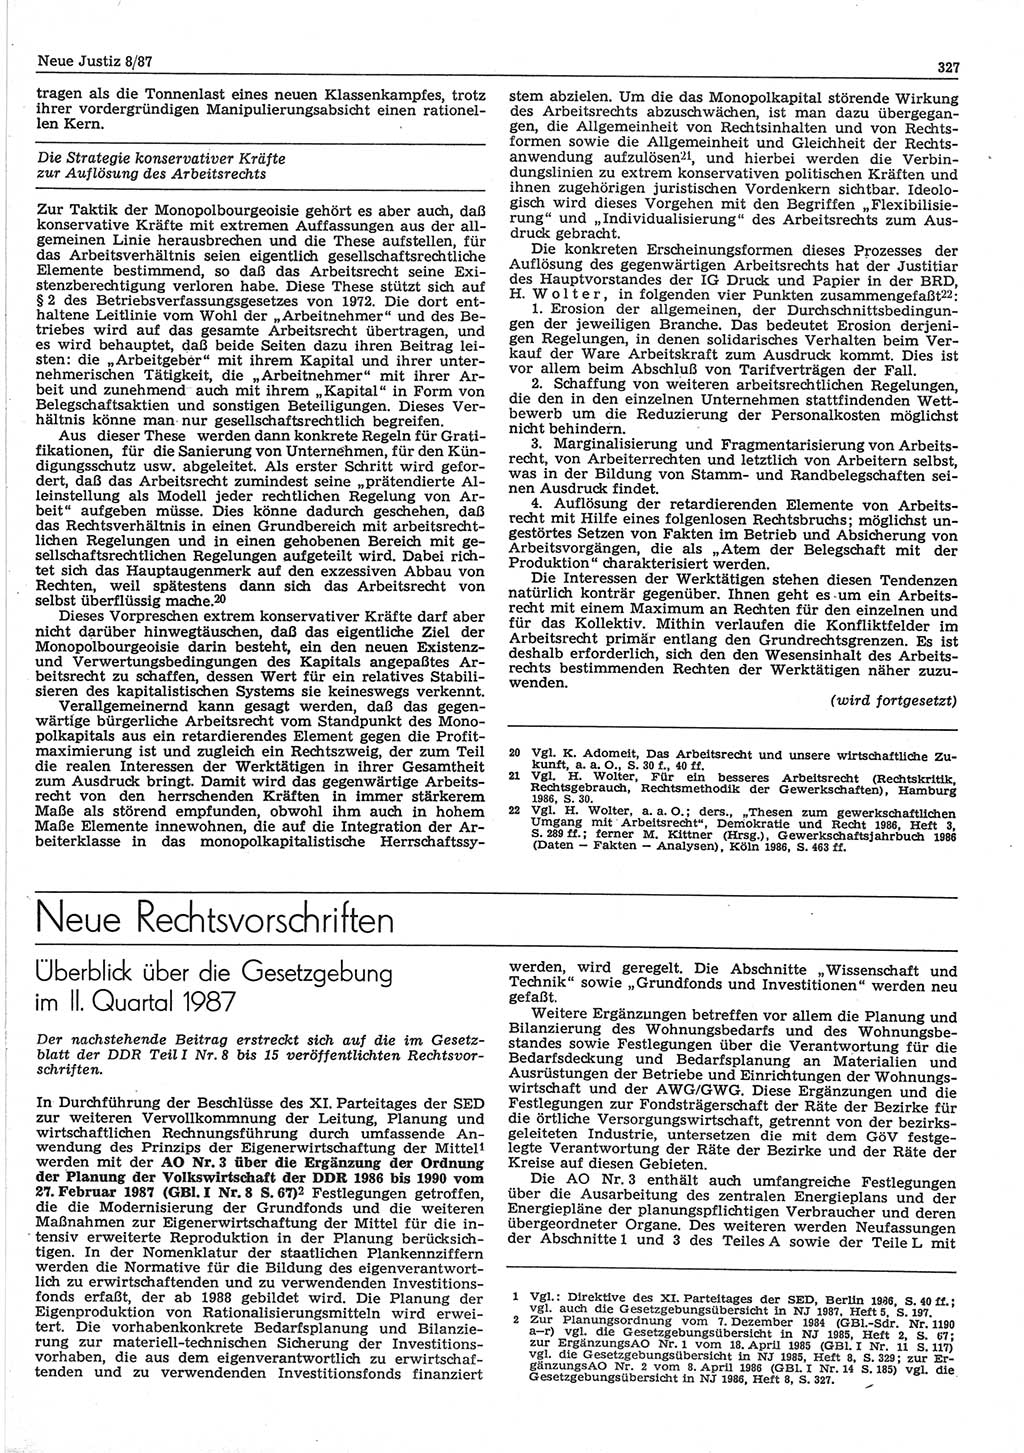 Neue Justiz (NJ), Zeitschrift für sozialistisches Recht und Gesetzlichkeit [Deutsche Demokratische Republik (DDR)], 41. Jahrgang 1987, Seite 327 (NJ DDR 1987, S. 327)